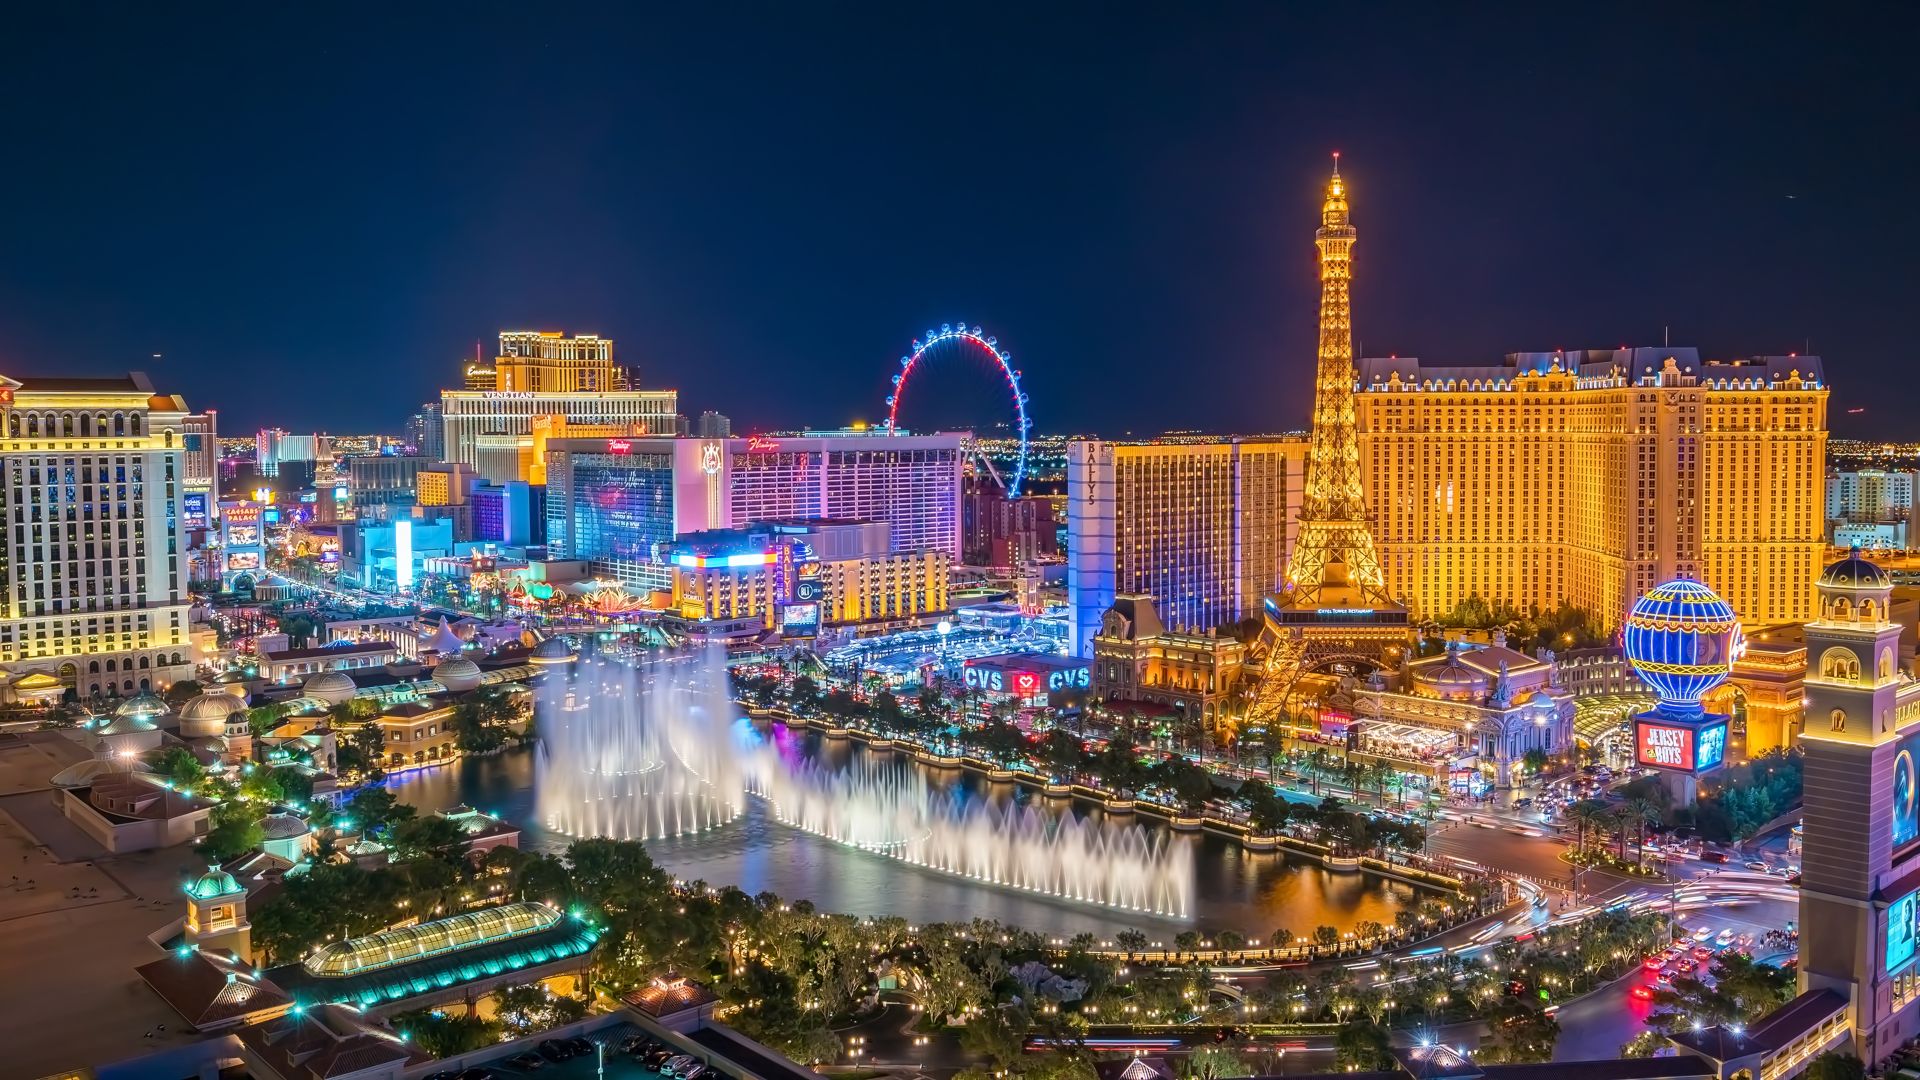 Vista panorámica del Strip de Las Vegas